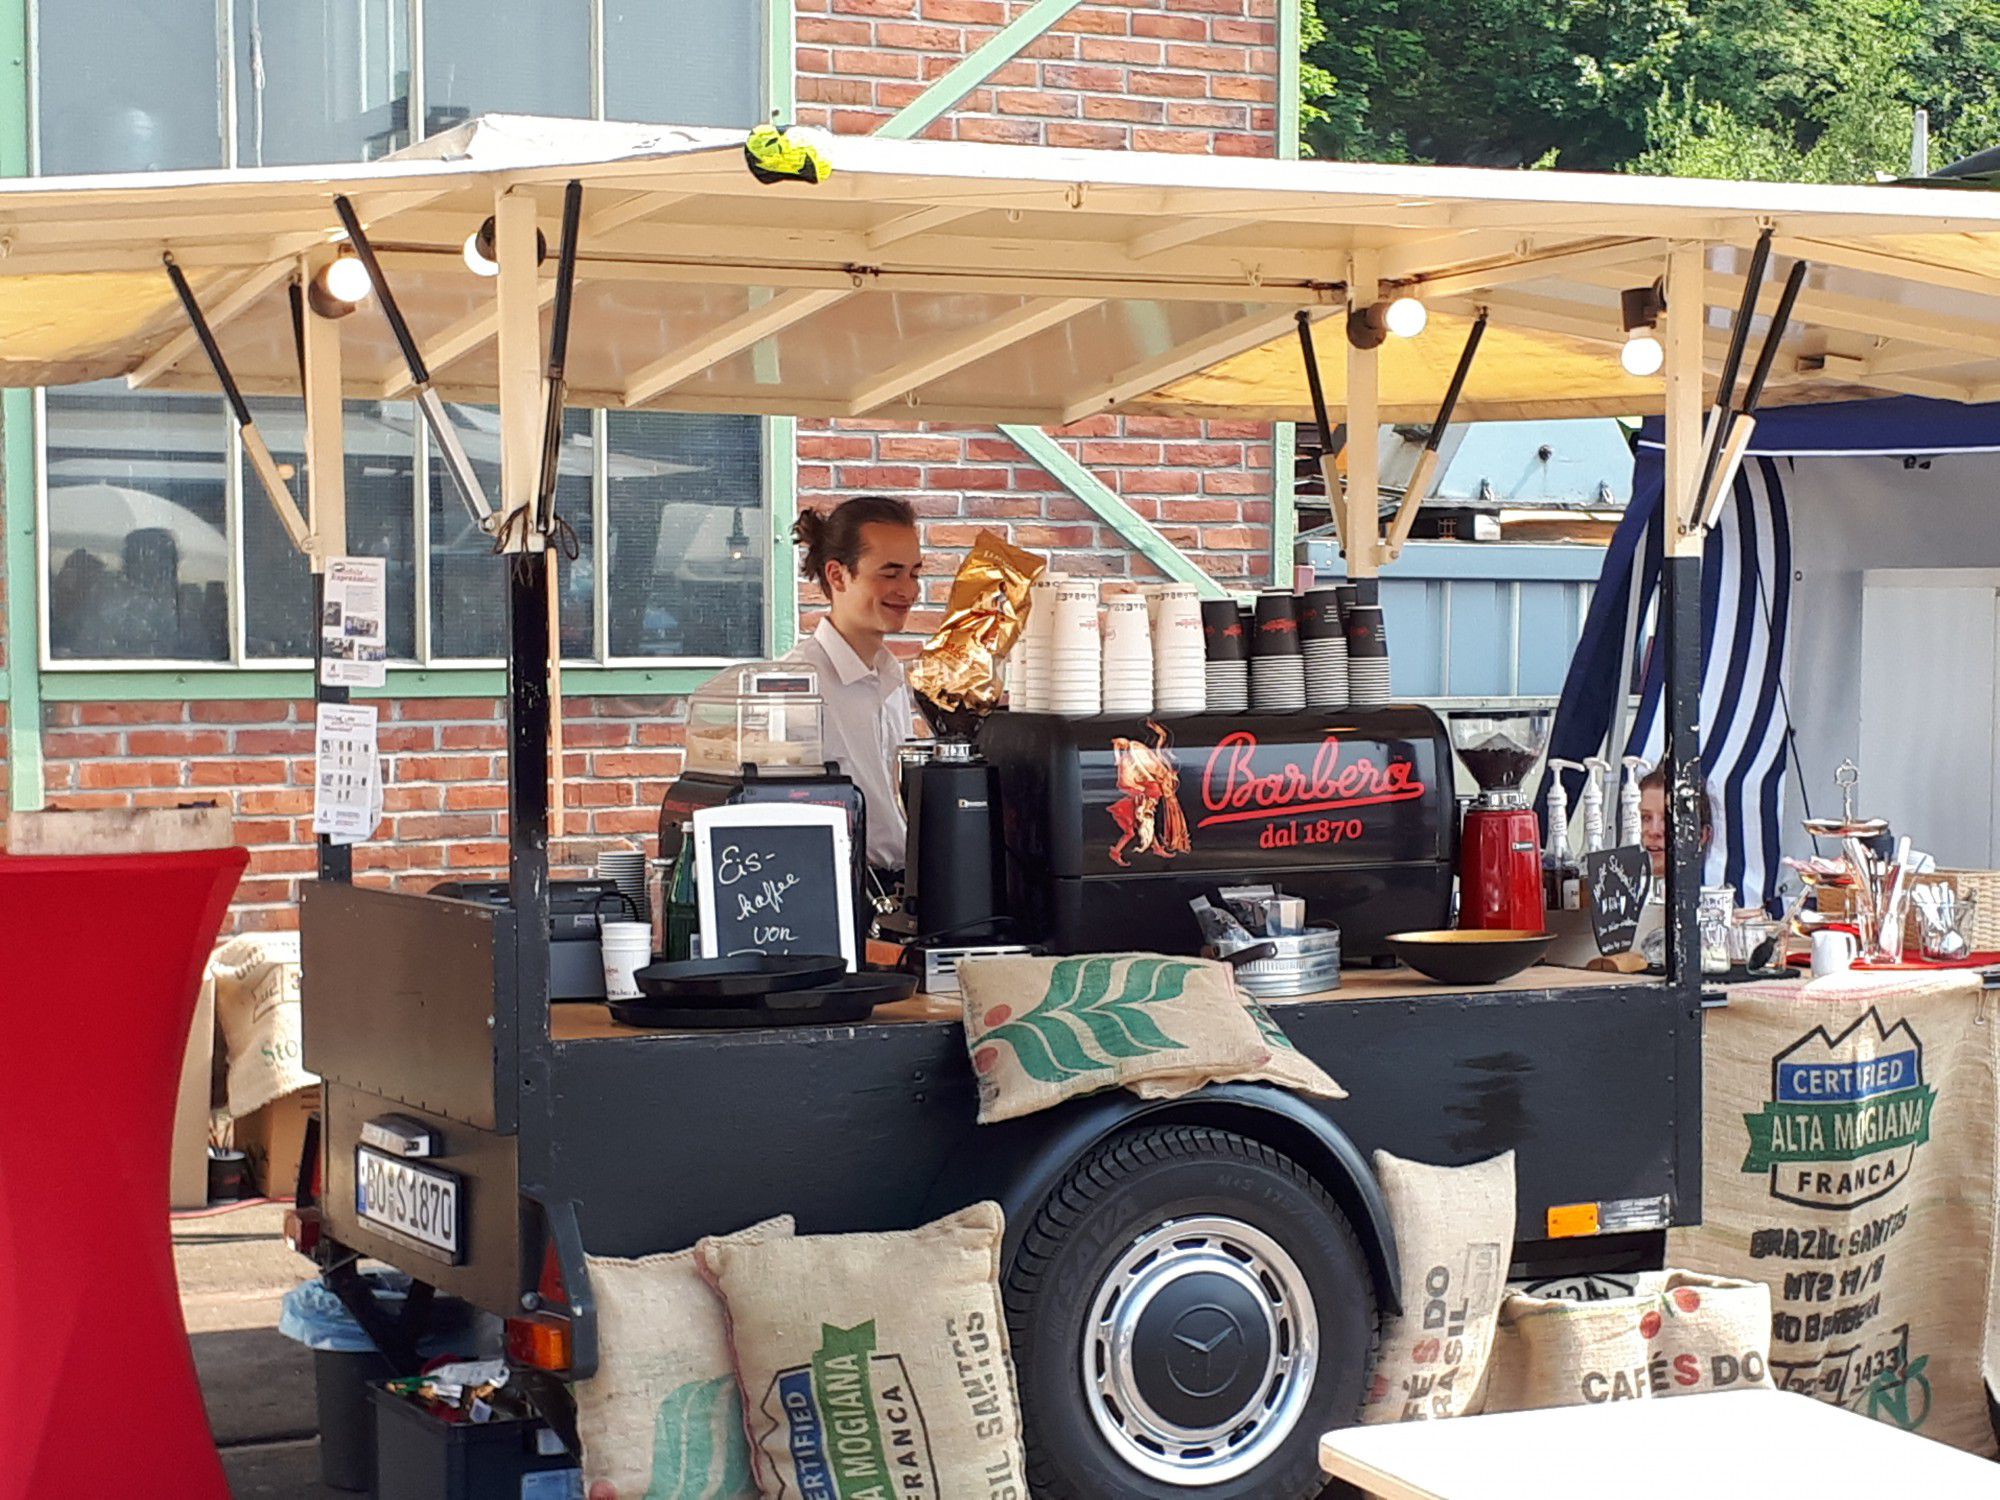 An der mobilen Espresso-Bar können sich Besucher von Haus Opherdicke mit leckerem Kaffee und mehr verwöhnen lassen. (Foto: privat)